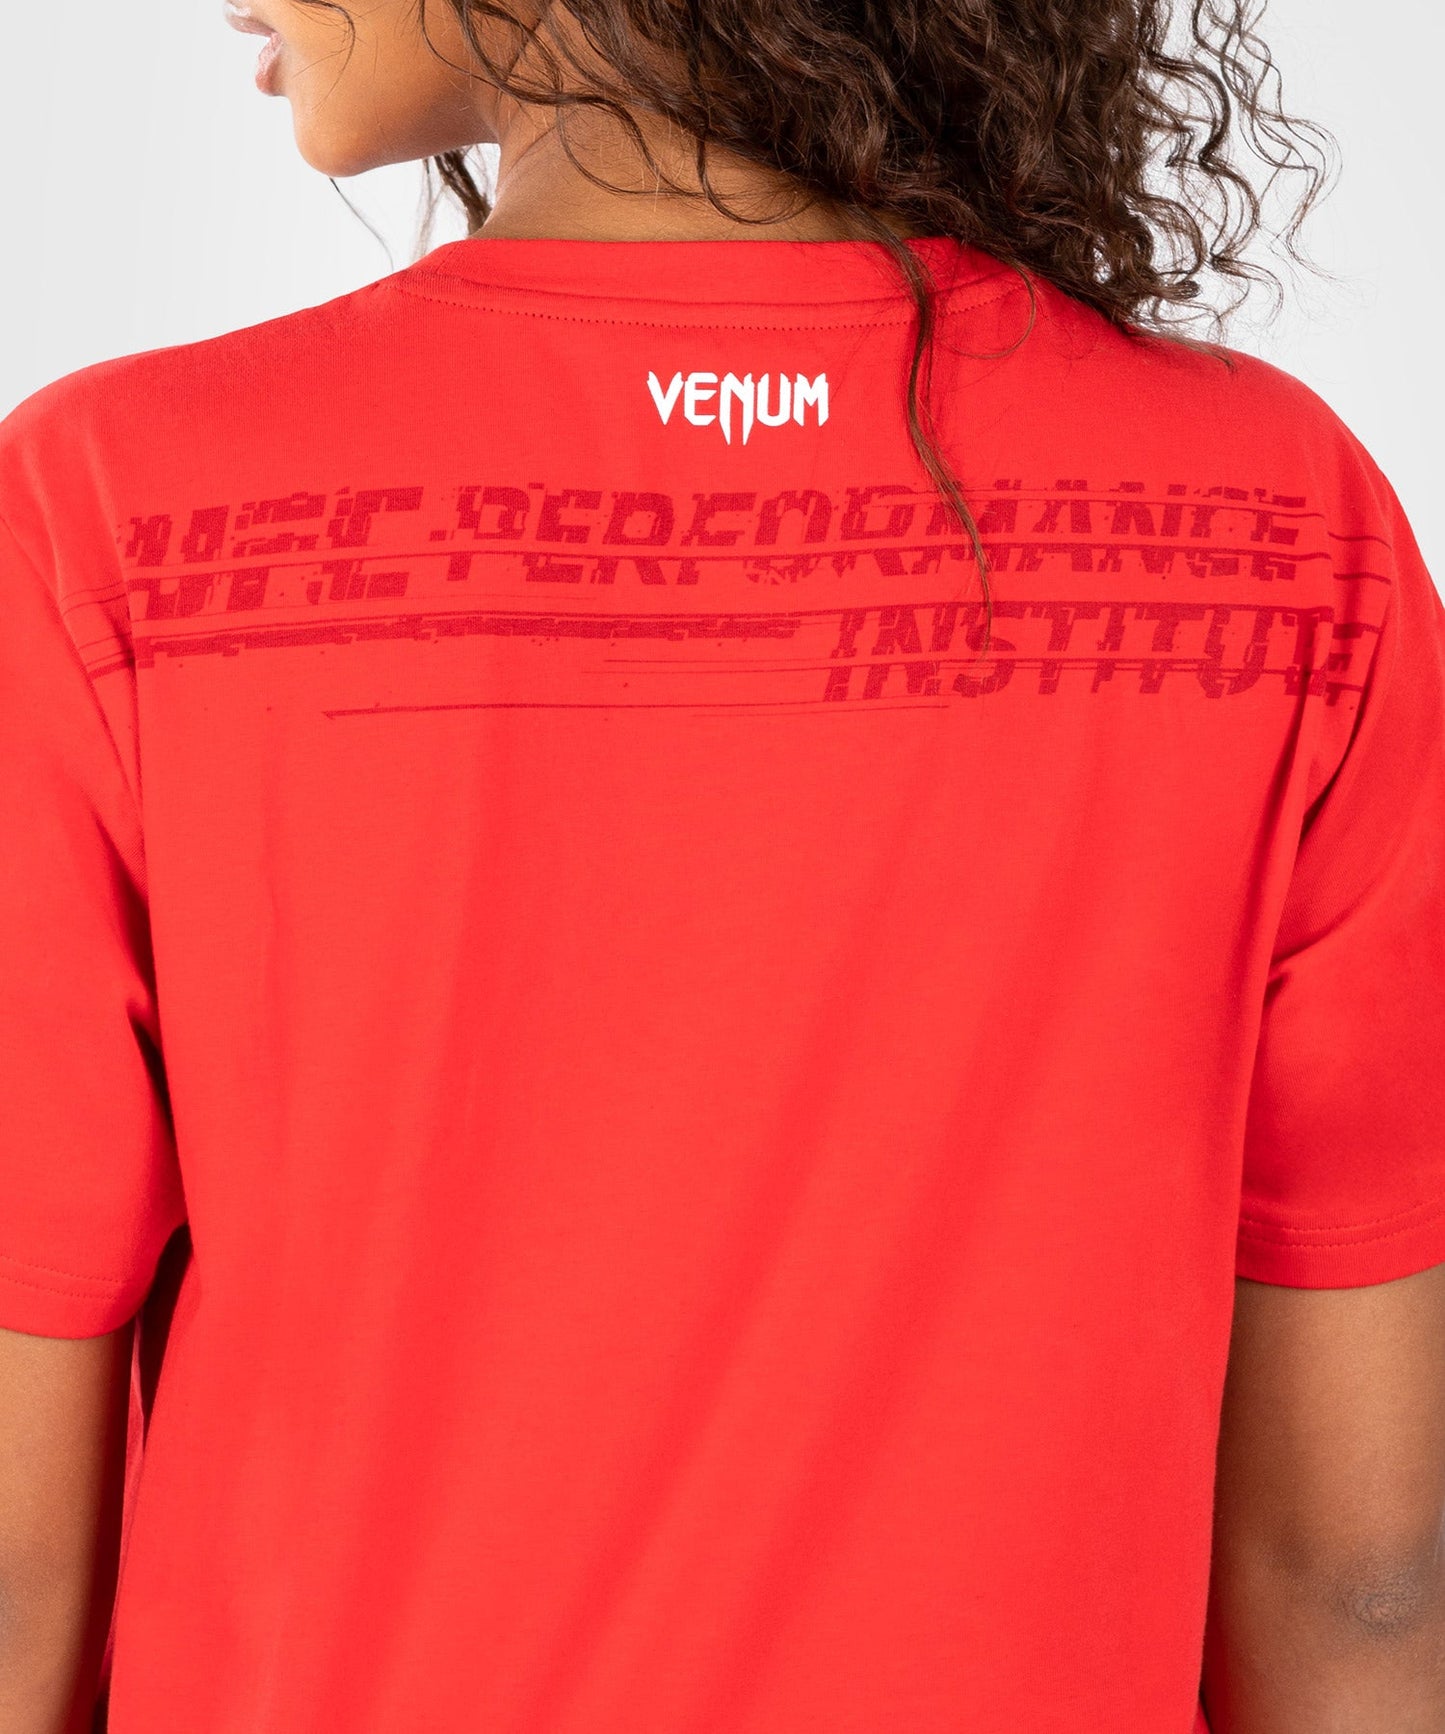 UFC Venum Performance Institute 2.0  T-Shirt für Frauen - Rot